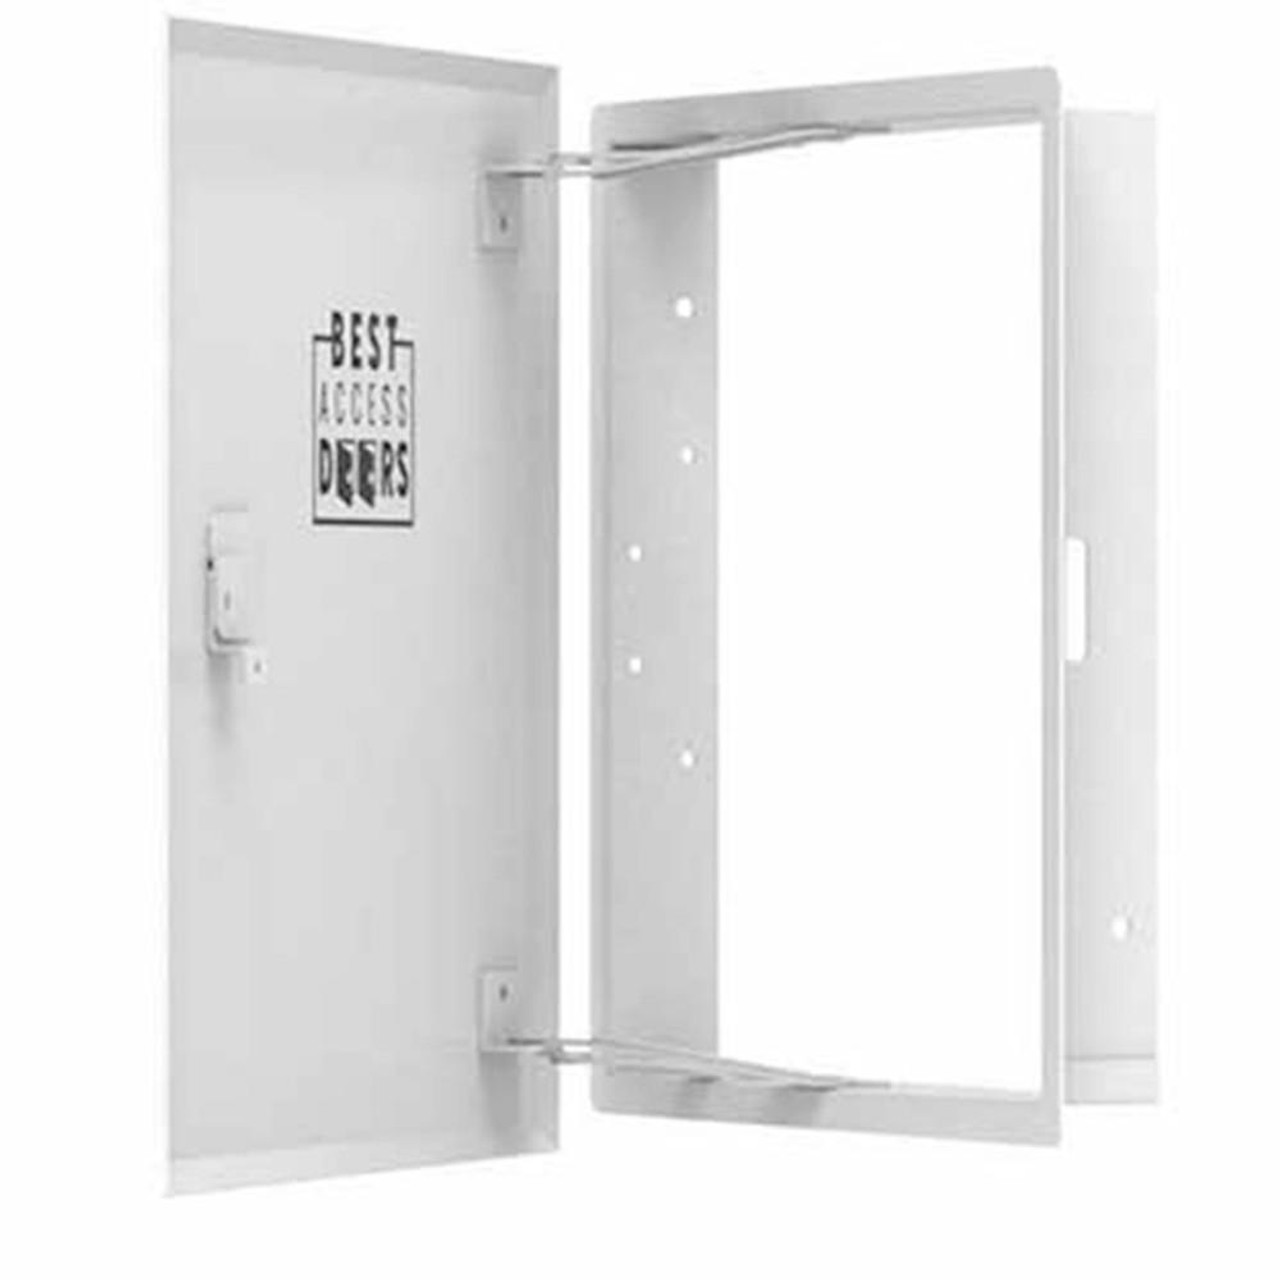 24 x 36 Aesthetic Access Door with Hidden Flange